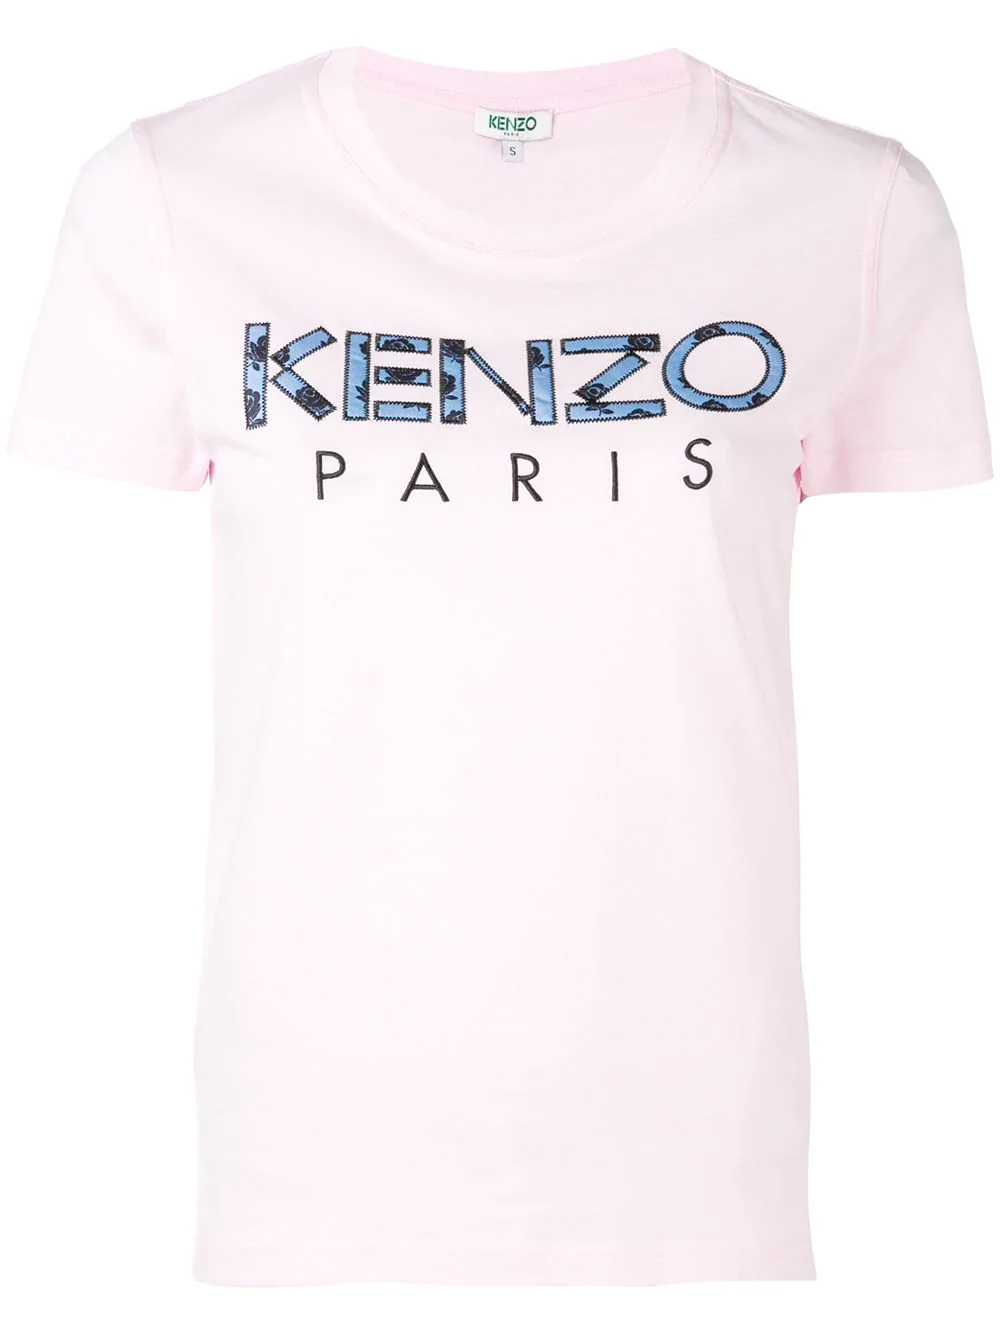 kenzo paris t shirt sale